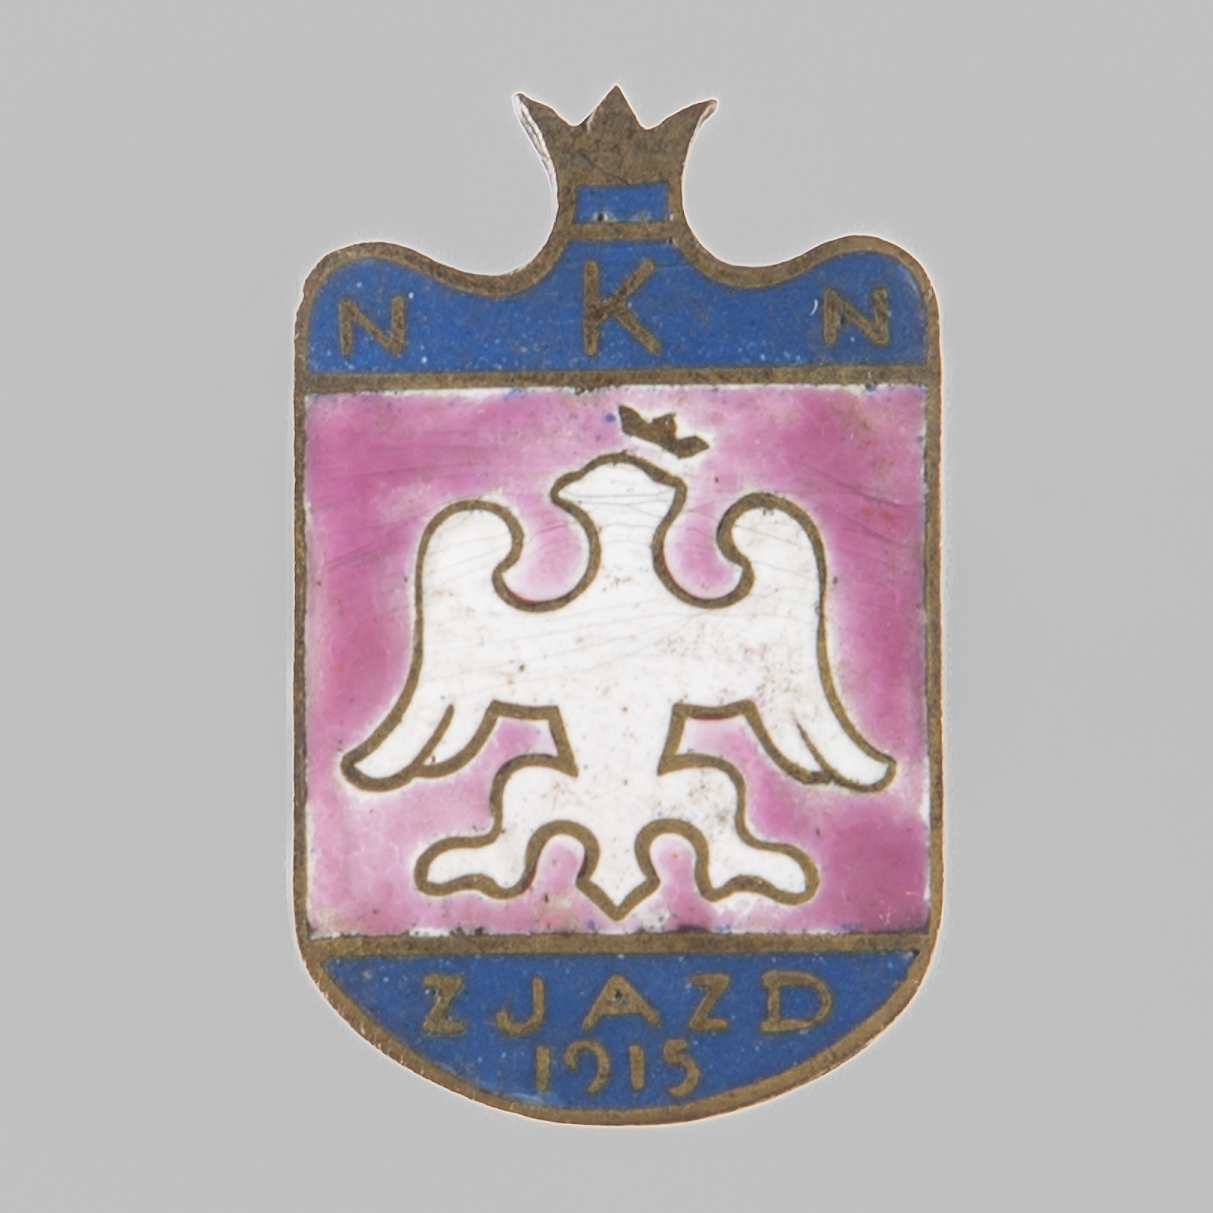 Odznaka "N.K.N. ZJAZD 1915"